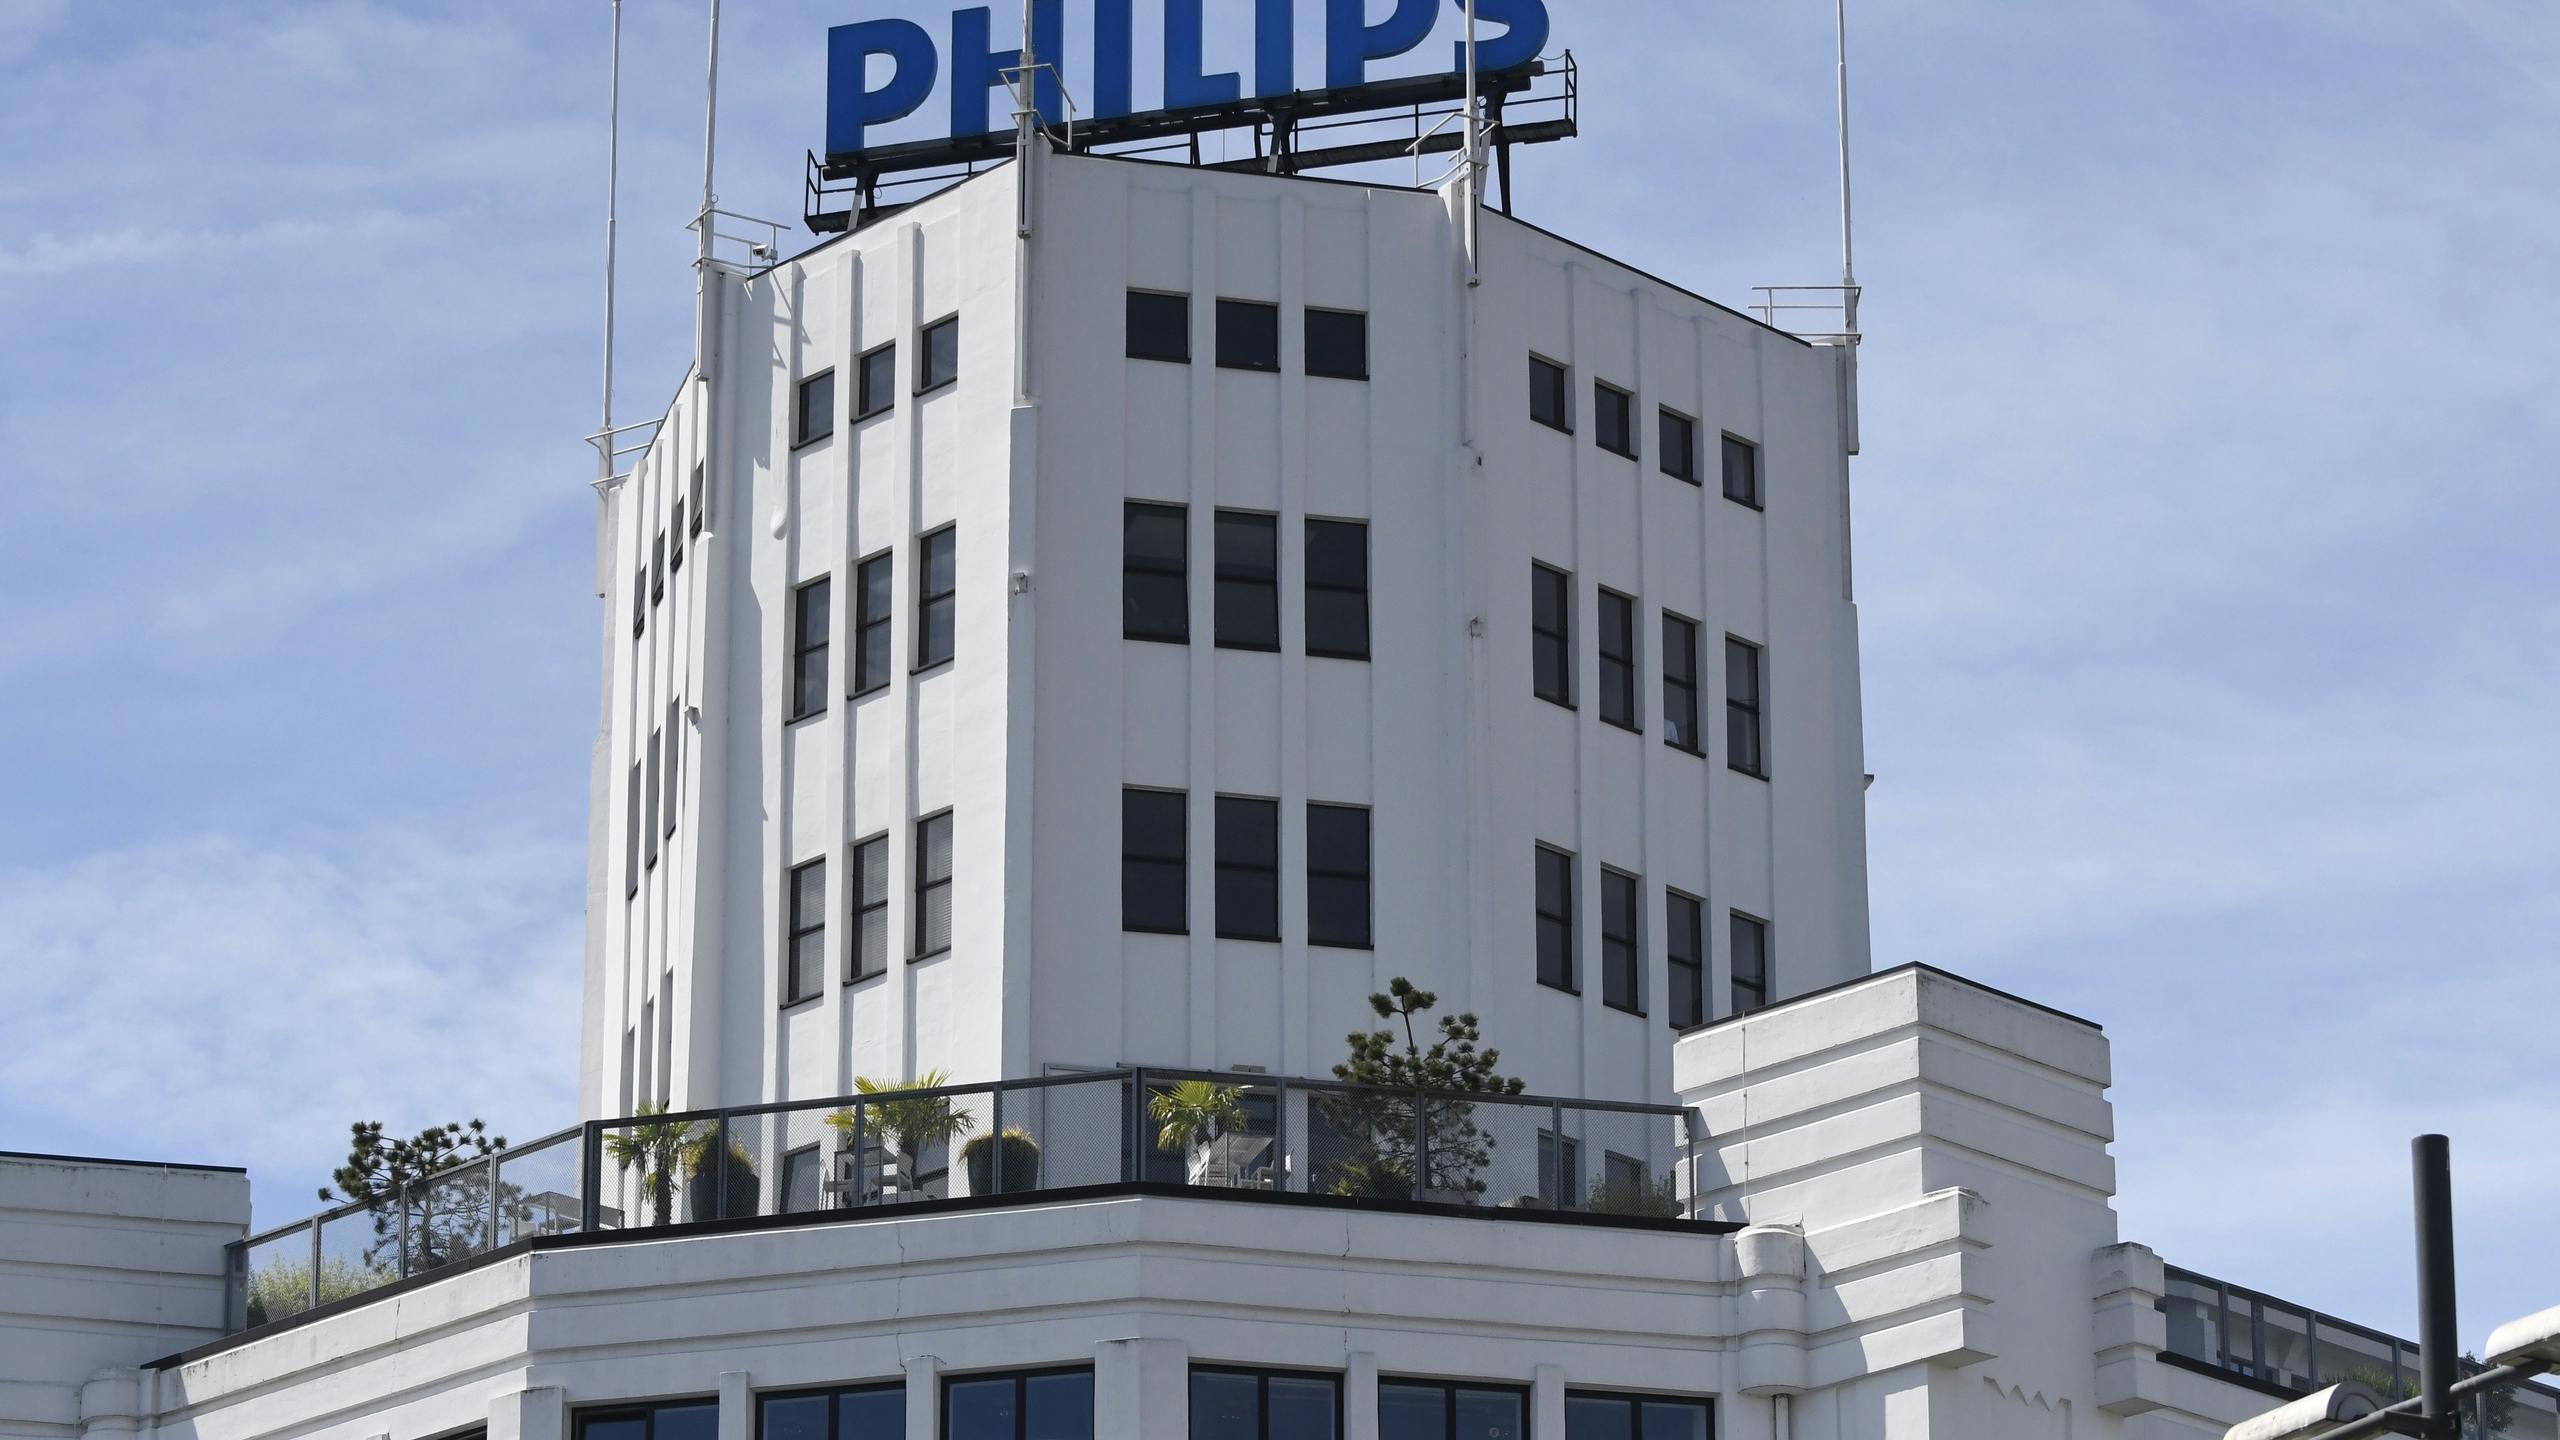 Philips bij winnaars op Damrak na aangekondigd vertrek topman